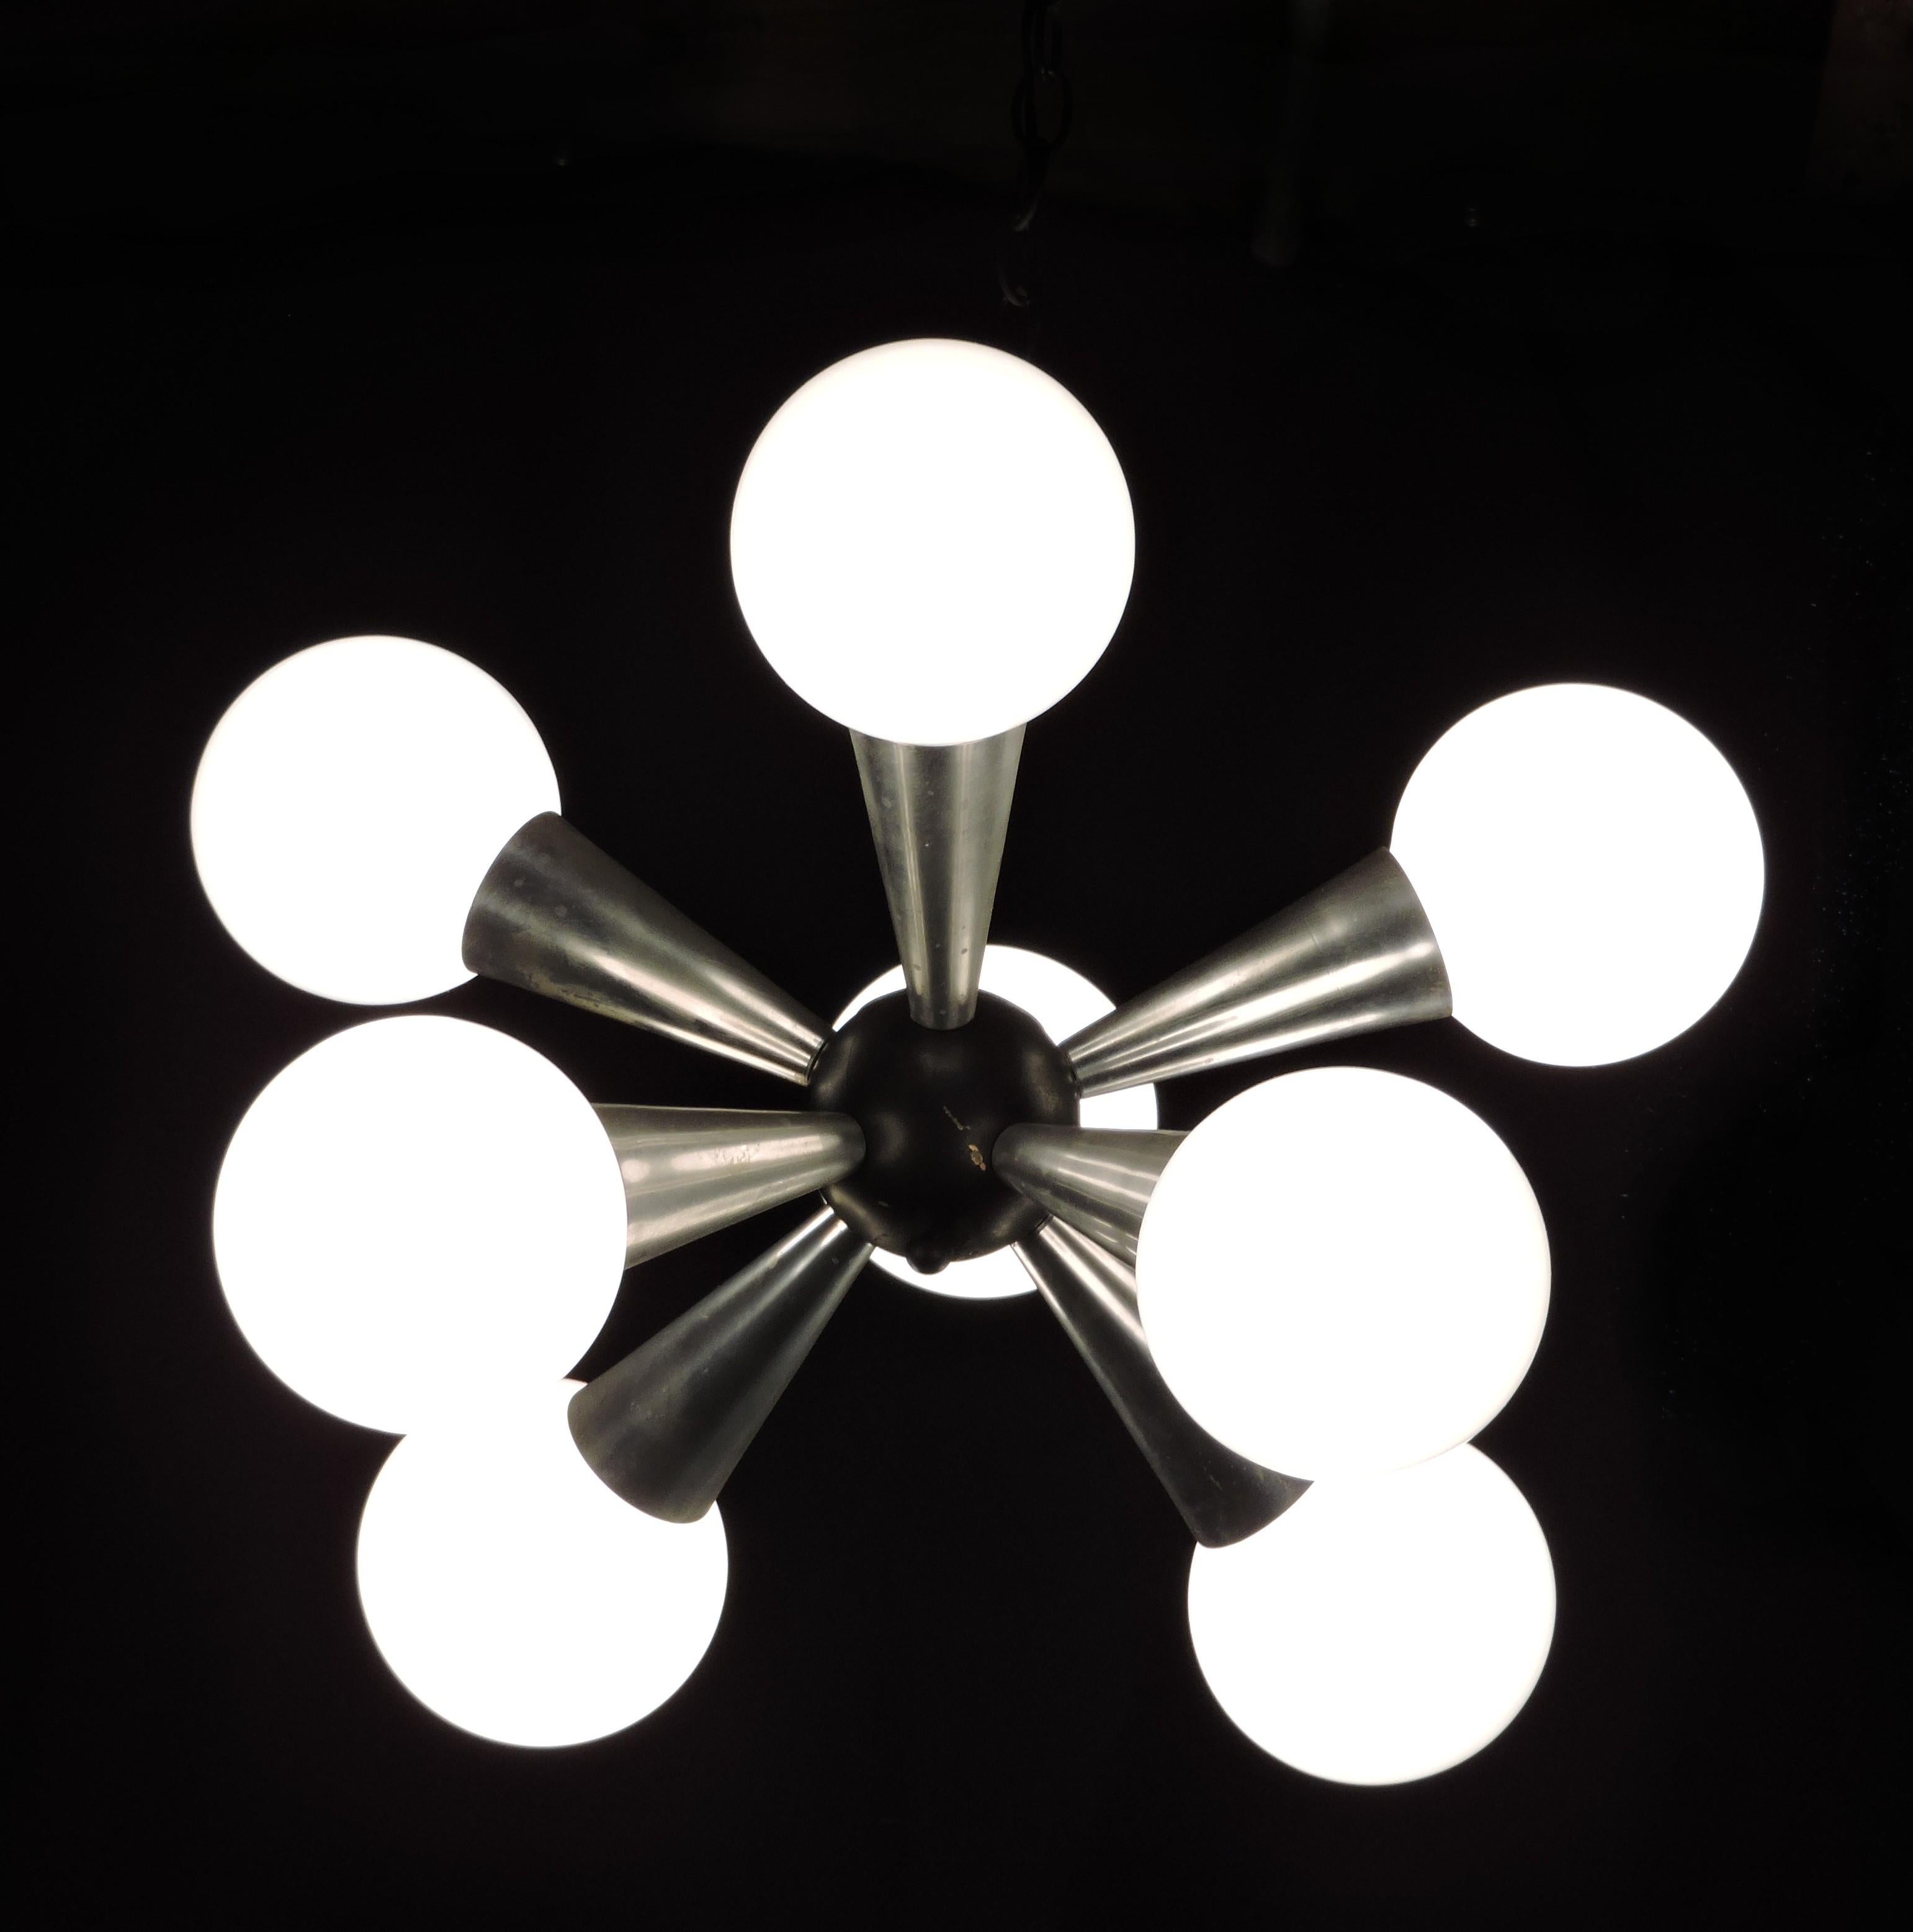 Très cool lustre Sputnik à 8 lumières. Ce luminaire comporte 8 bras en forme de cône en aluminium qui rayonnent à partir d'une boule centrale noire. Il y a une chaîne de 18 pouces, ce qui donne une chute d'environ 31 pouces jusqu'au bas du